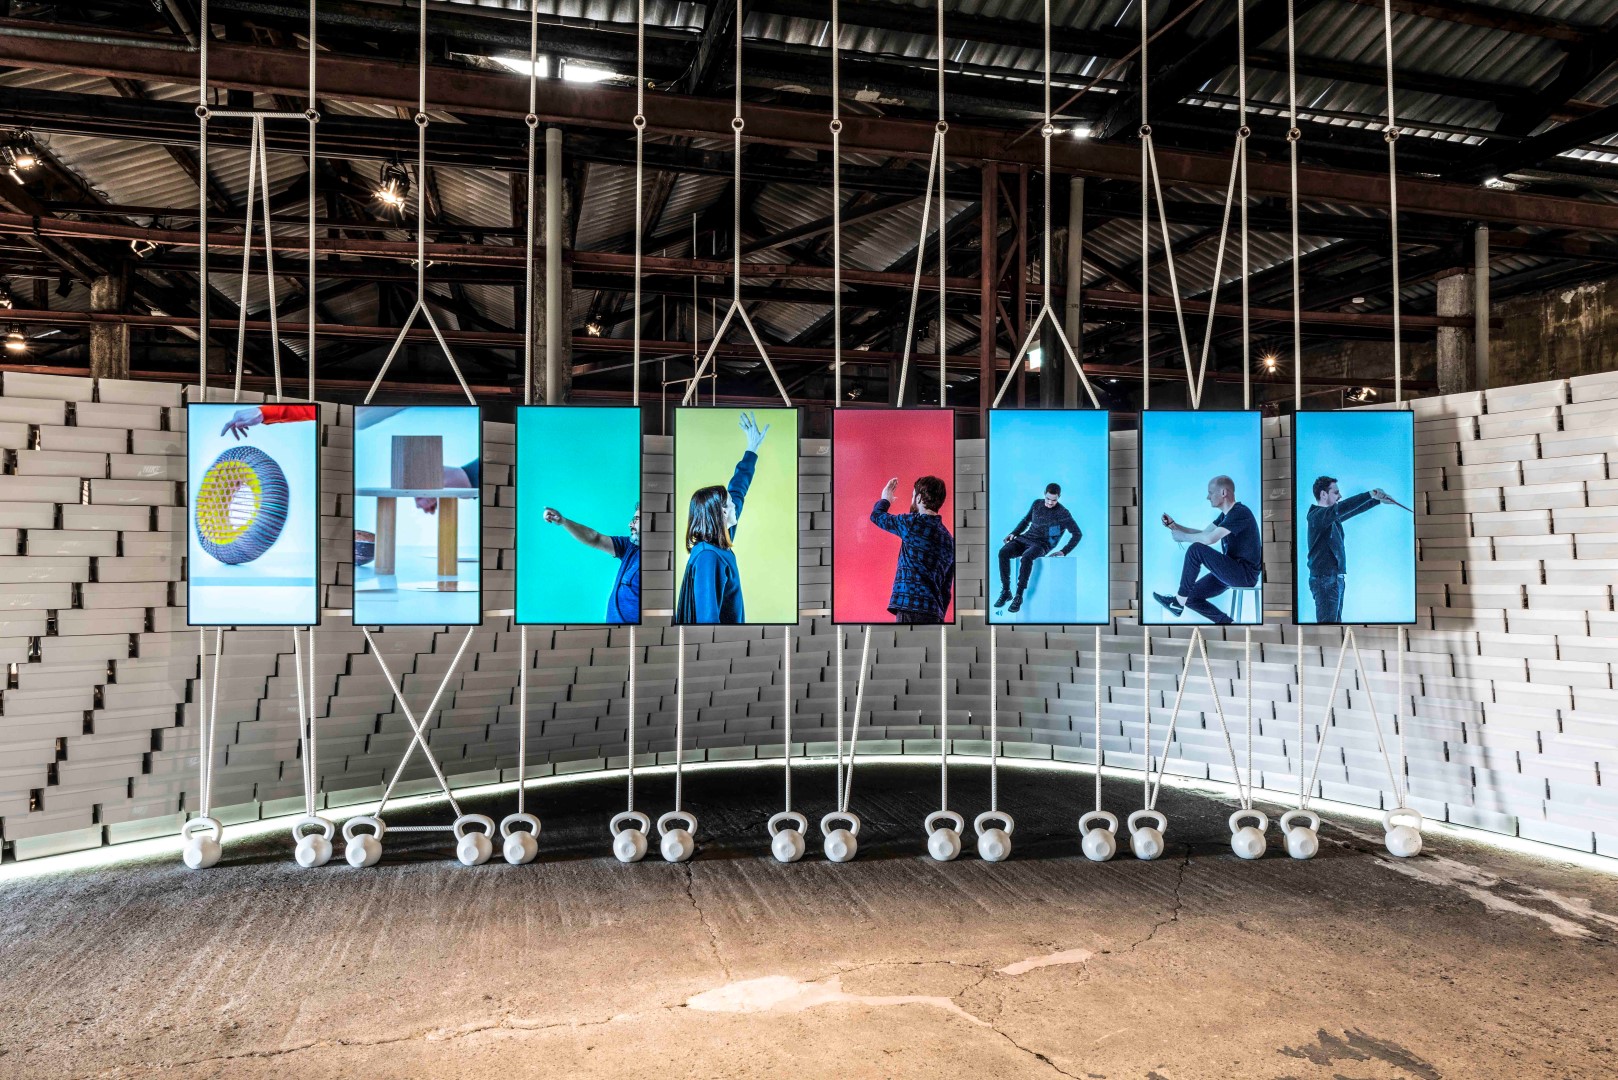 Fuorisalone 2016 Milano: Nike presenta la mostra “The Nature of Motion”, le foto